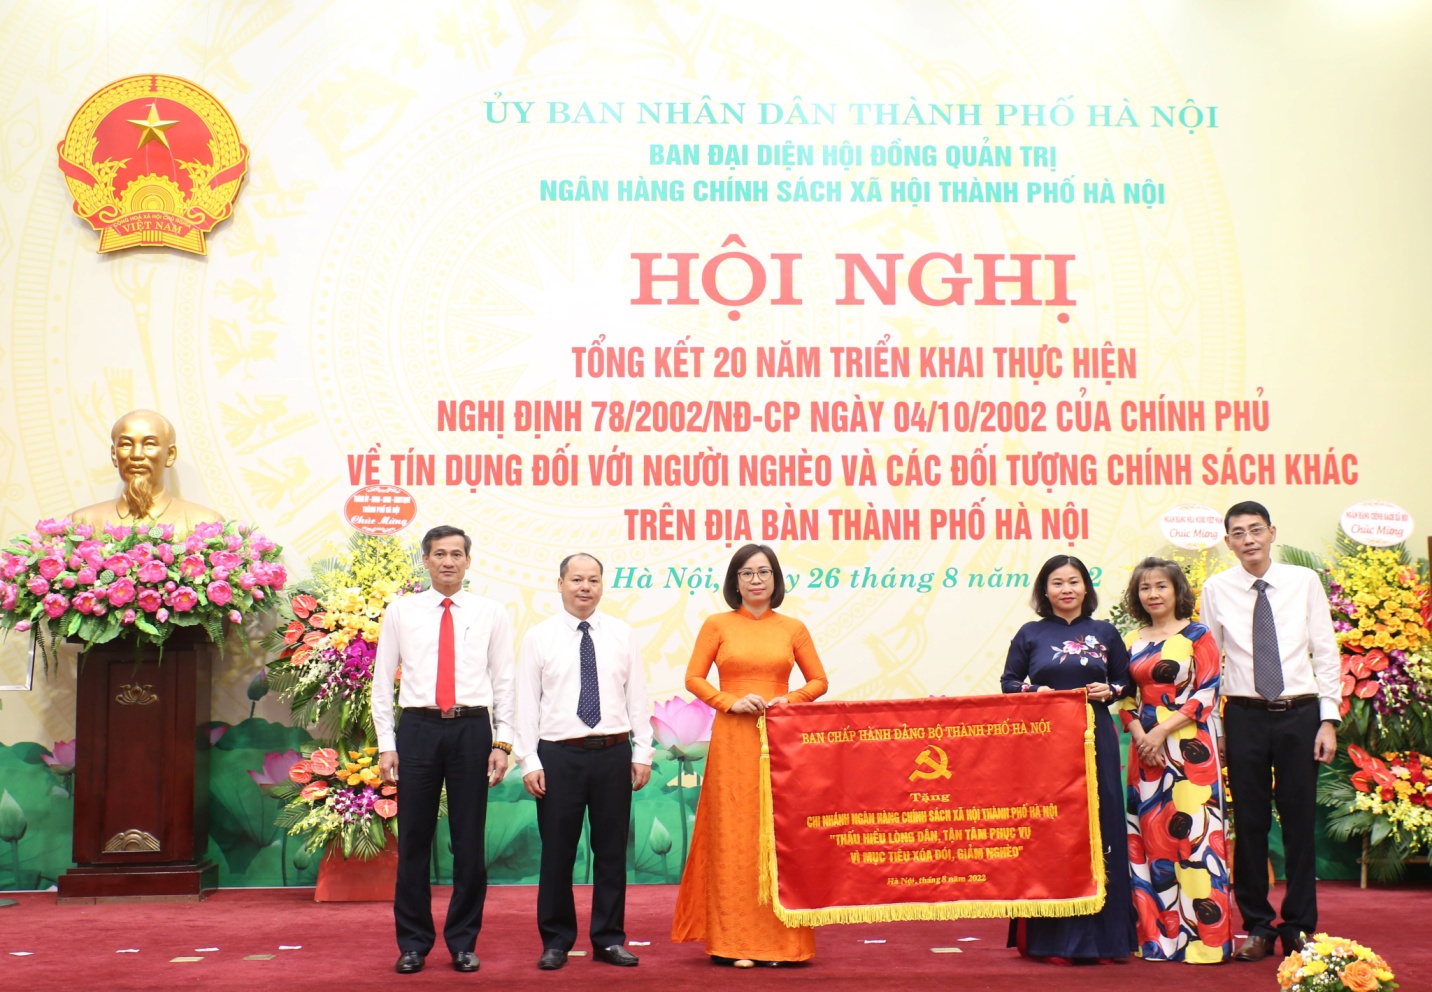 Phó Bí thư Thường trực Thành ủy Hà Nội Nguyễn Thị Tuyến trao bức trướng của Ban Chấp hành Đảng bộ thành phố Hà Nội tặng Chi nhánh Ngân hàng Chính sách xã hội thành phố Hà Nội